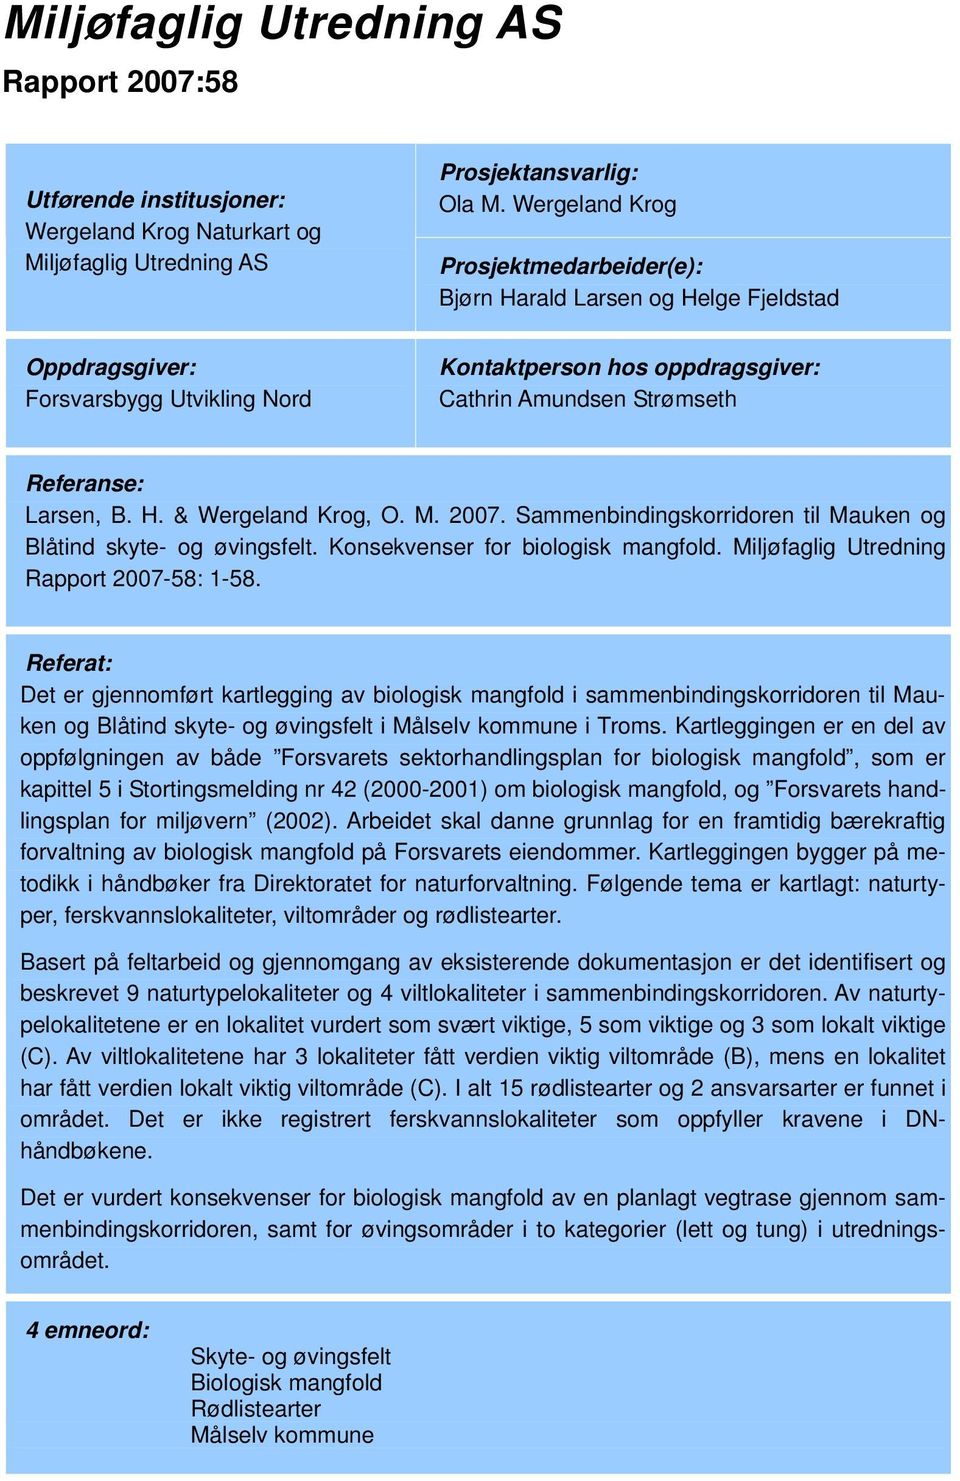 B. H. & Wergeland Krog, O. M. 2007. Sammenbindingskorridoren til Mauken og Blåtind skyte- og øvingsfelt. Konsekvenser for biologisk mangfold. Miljøfaglig Utredning Rapport 2007-58: 1-58.